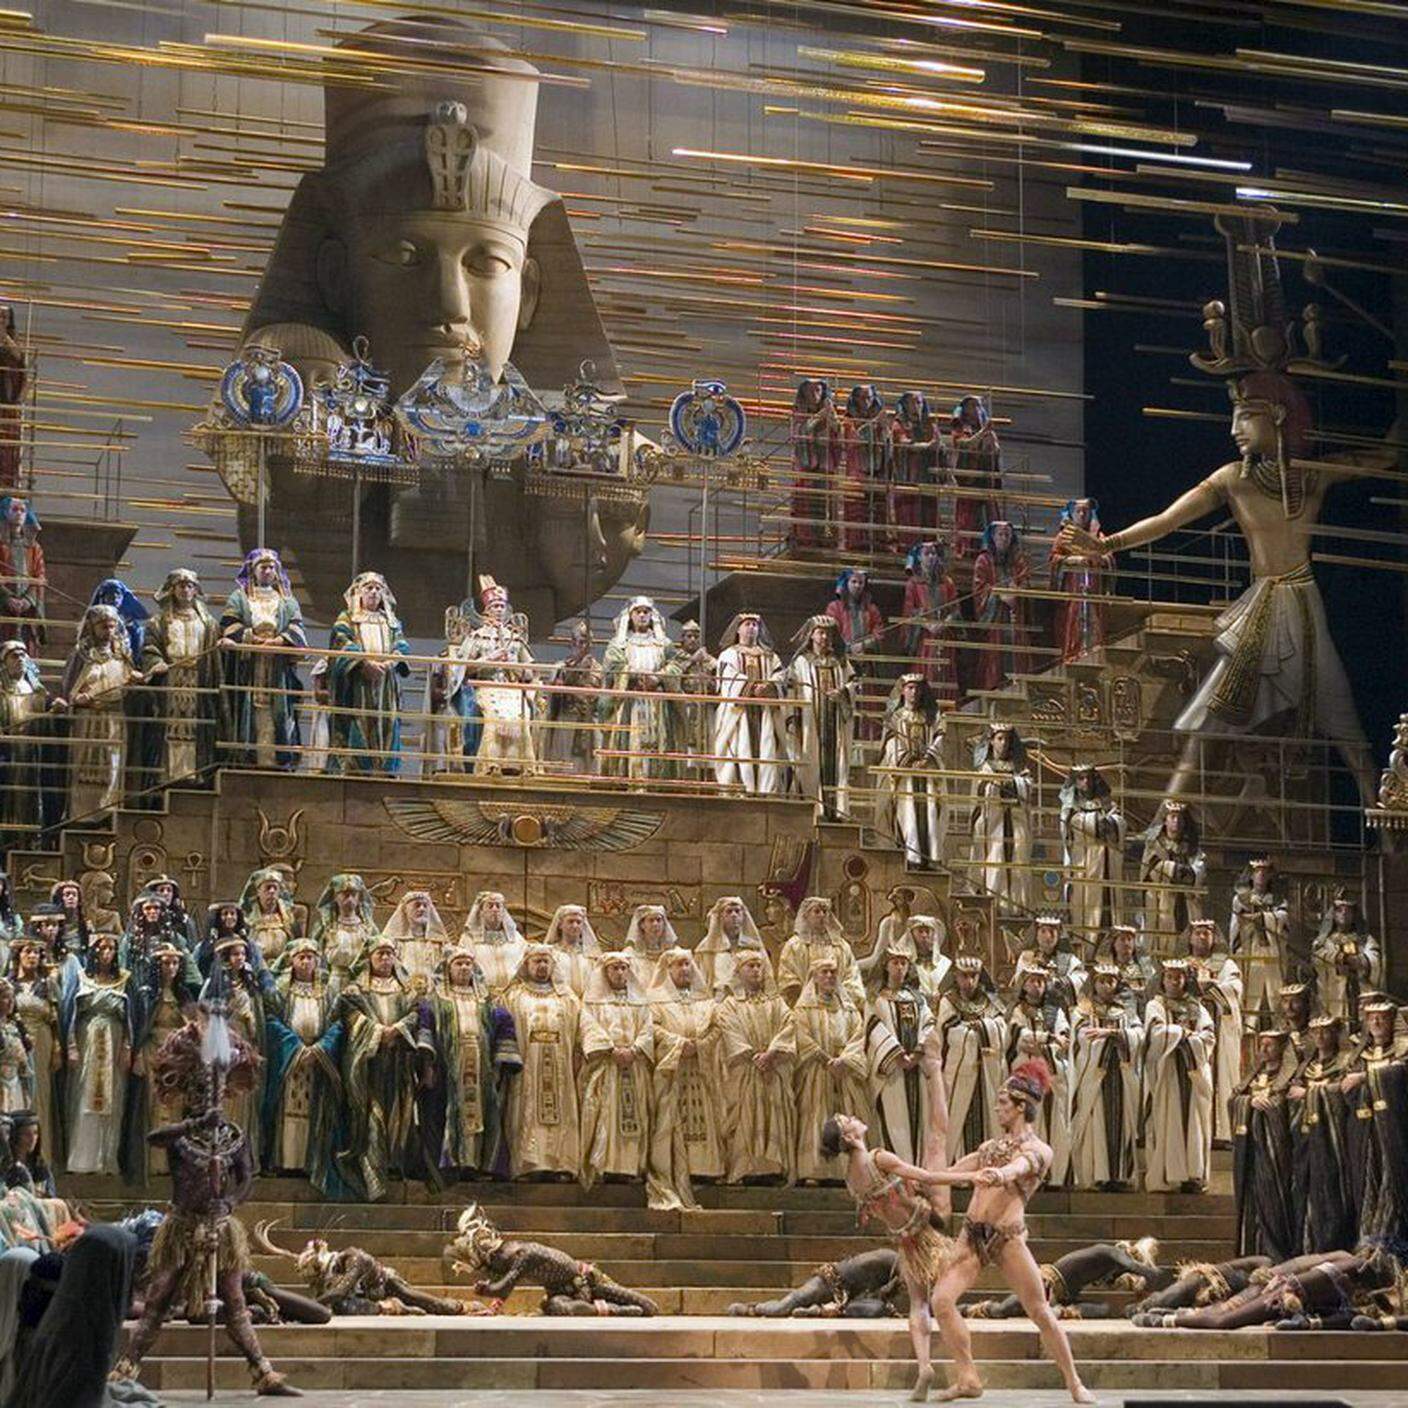 Gli attori si esibiranno durante le prove dell'opera "Aida" di Giuseppe Verdi al Teatro alla Scala, diretta da Franco Zeffirelli,